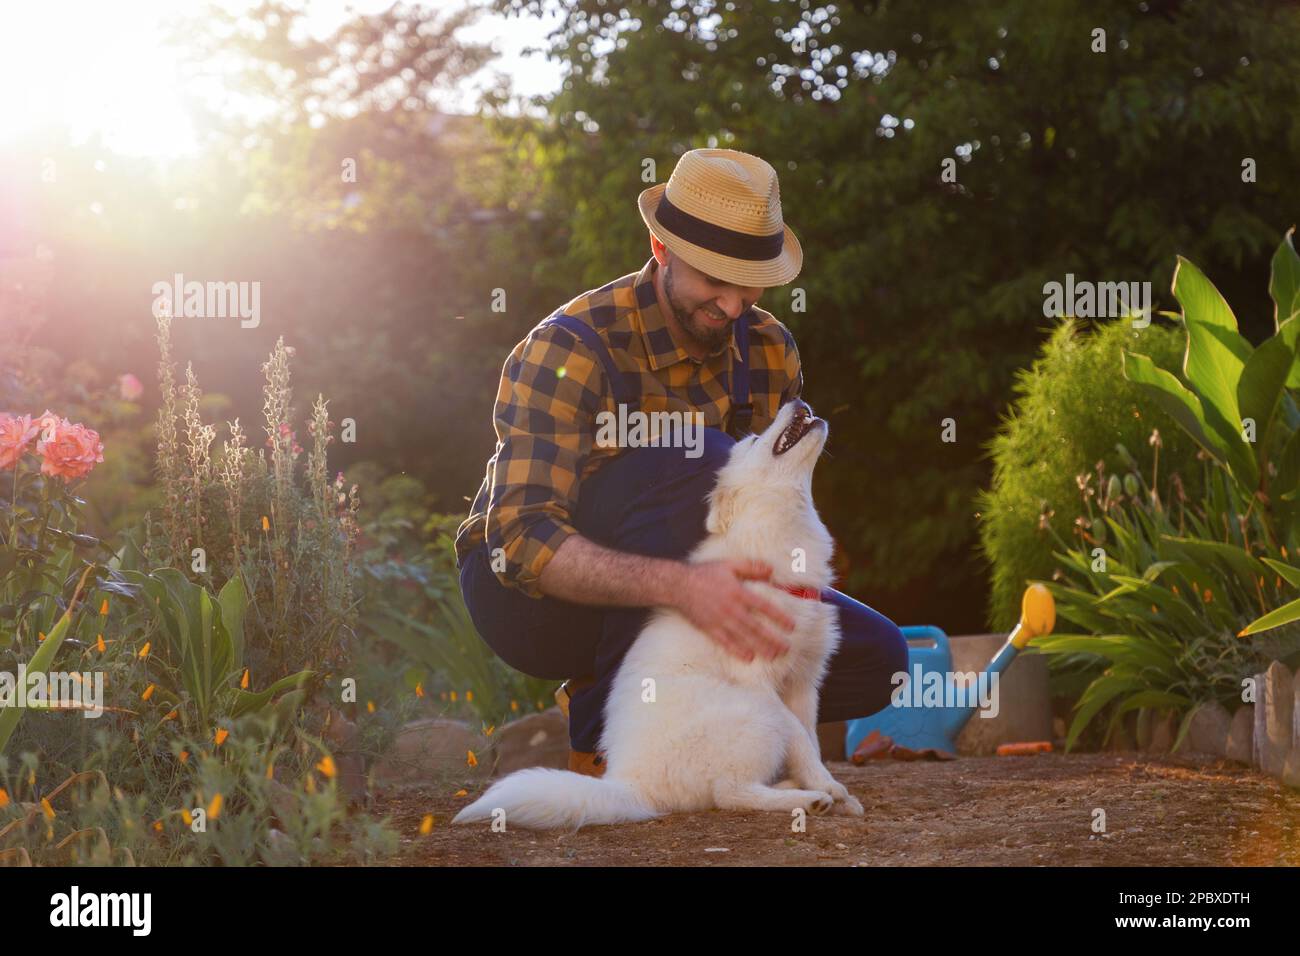 Jardinier souriant dans un vêtement décontracté jouant avec un chiot blanc de Samoyed. Jardin ensoleillé en arrière-plan. Le concept de l'entraînement d'animal de compagnie et Happy Dog Day Banque D'Images